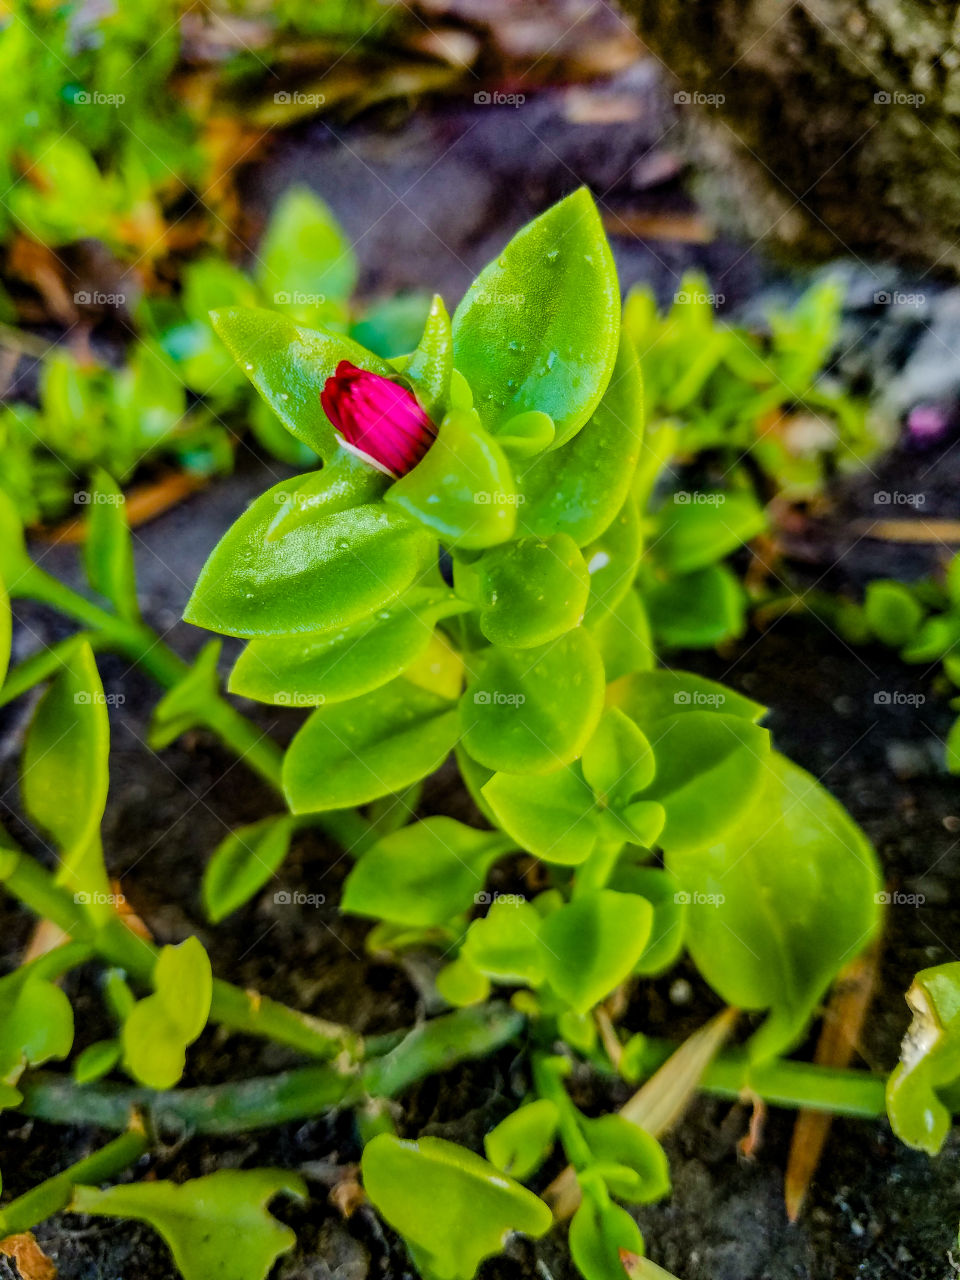 Blooming Flower